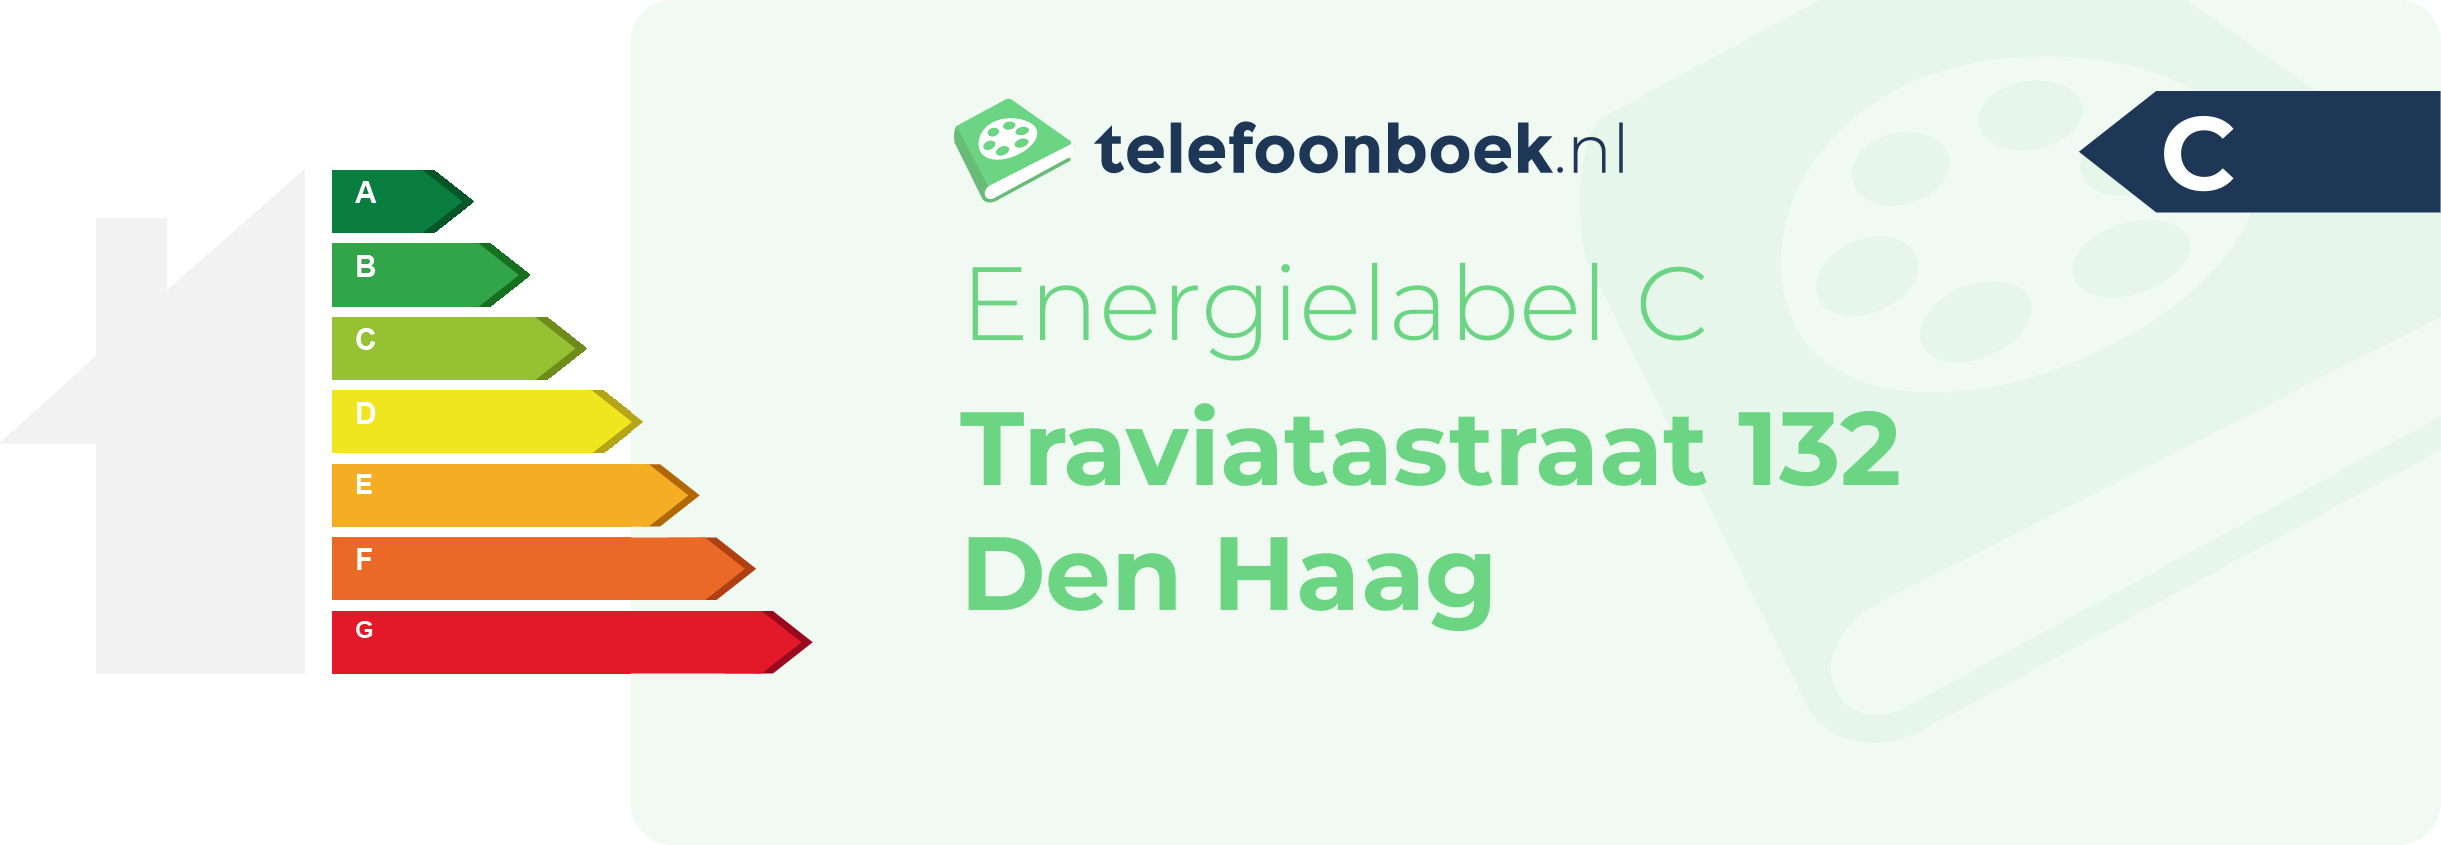 Energielabel Traviatastraat 132 Den Haag